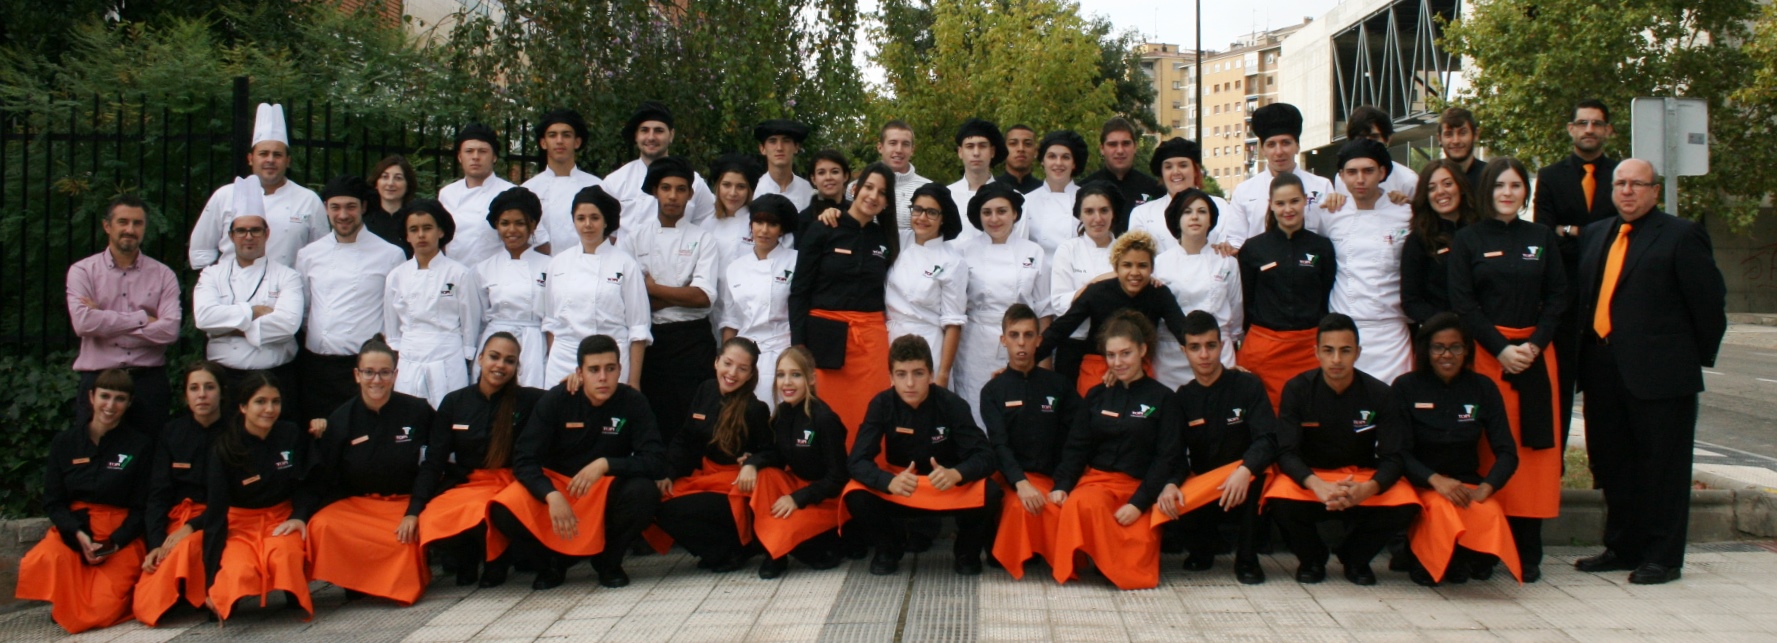 Alumnos Topi 2014-15